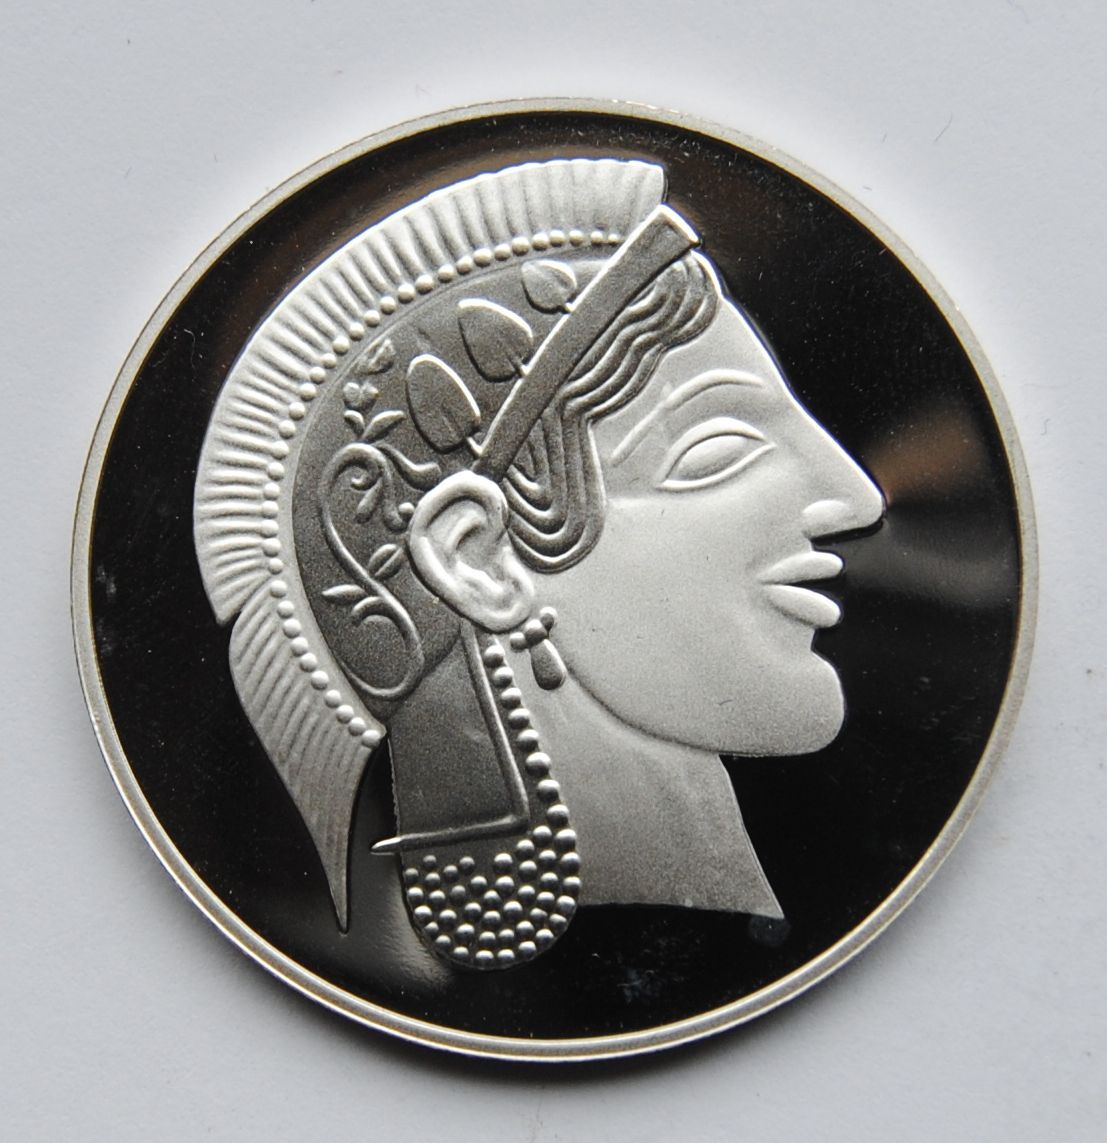 Řecko - Athénská, Tetradrachma, stříbrná KOPIE, průměr 40mm